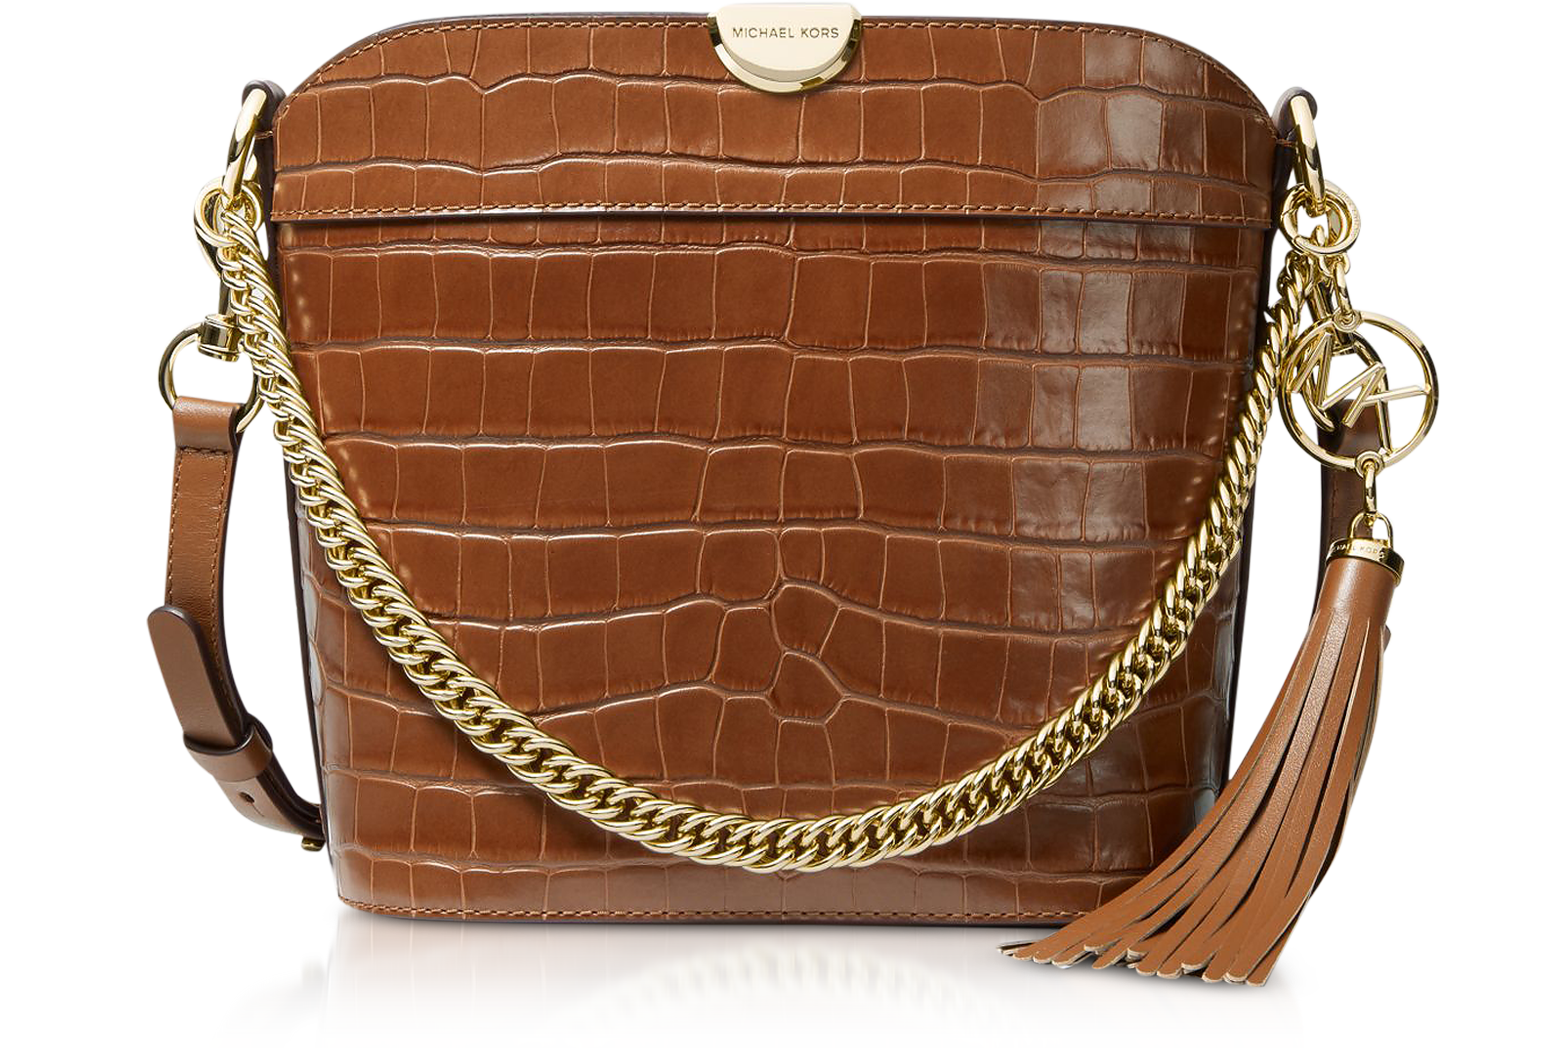 Audrey Medium Crocodile Embossed Leather Bucket Bag